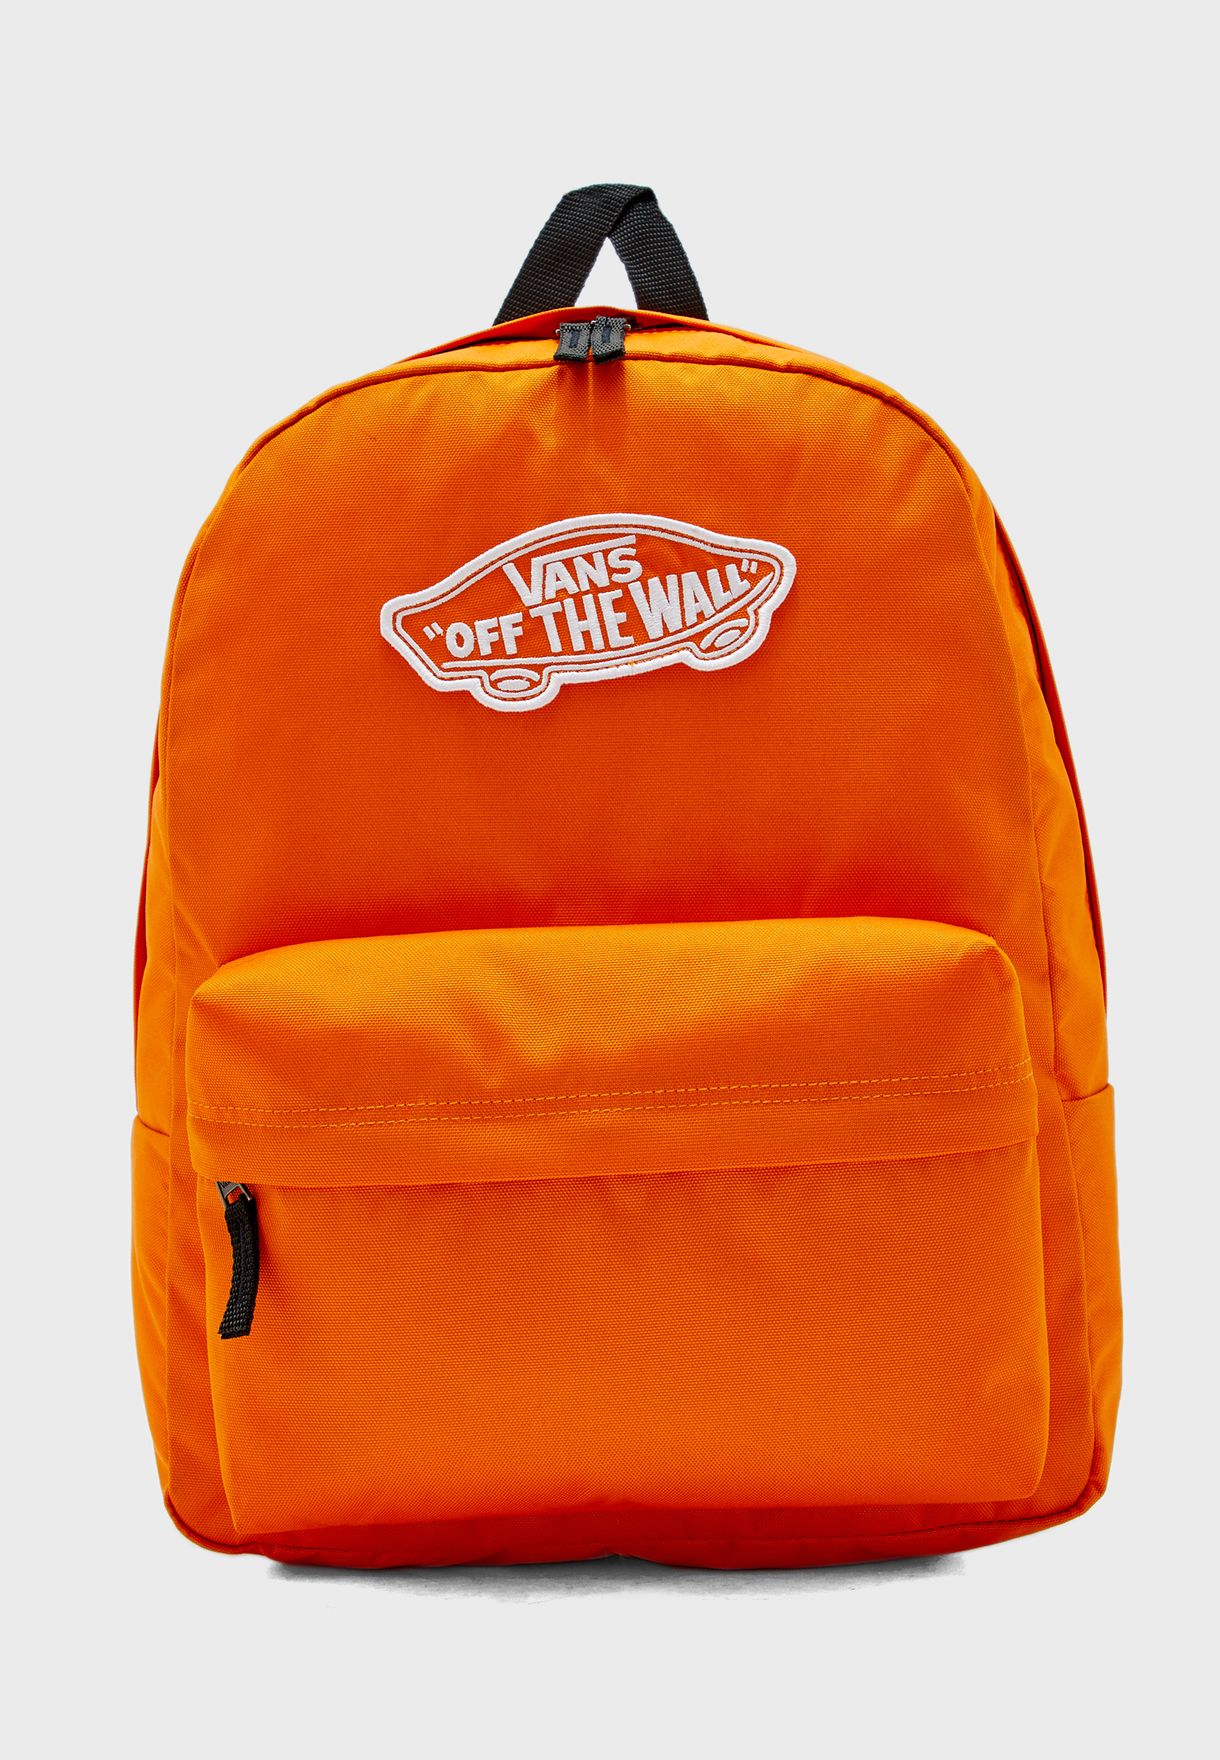 vans orange backpack